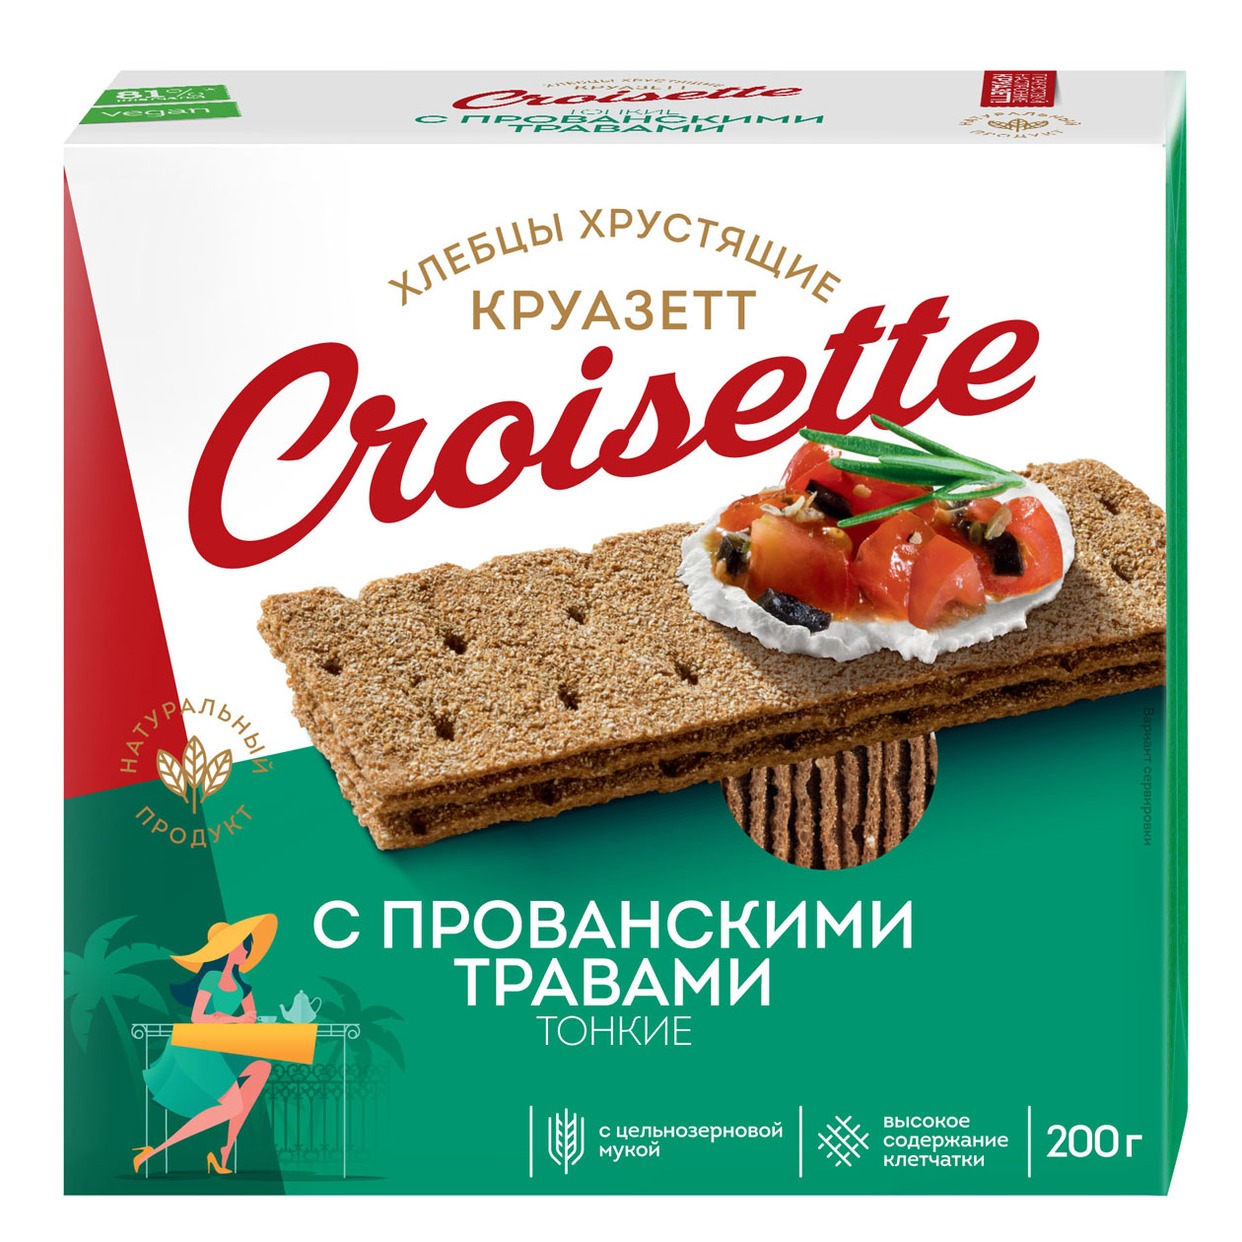 Хлебцы Croisette, ржано-пшеничные, 200 г по акции в Пятерочке